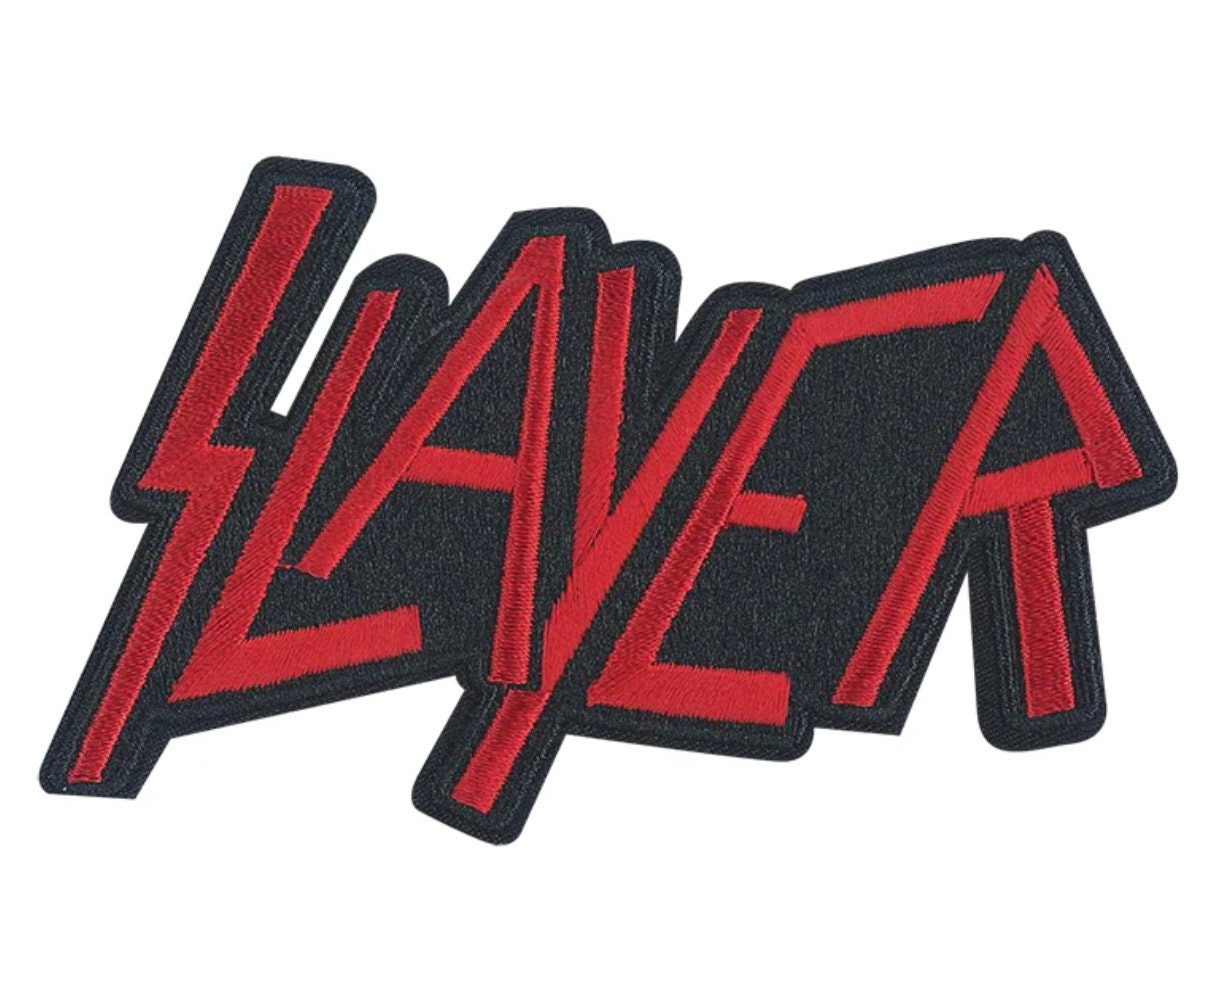 Slayer - Show No Mercy Patch 10cm x 10cm